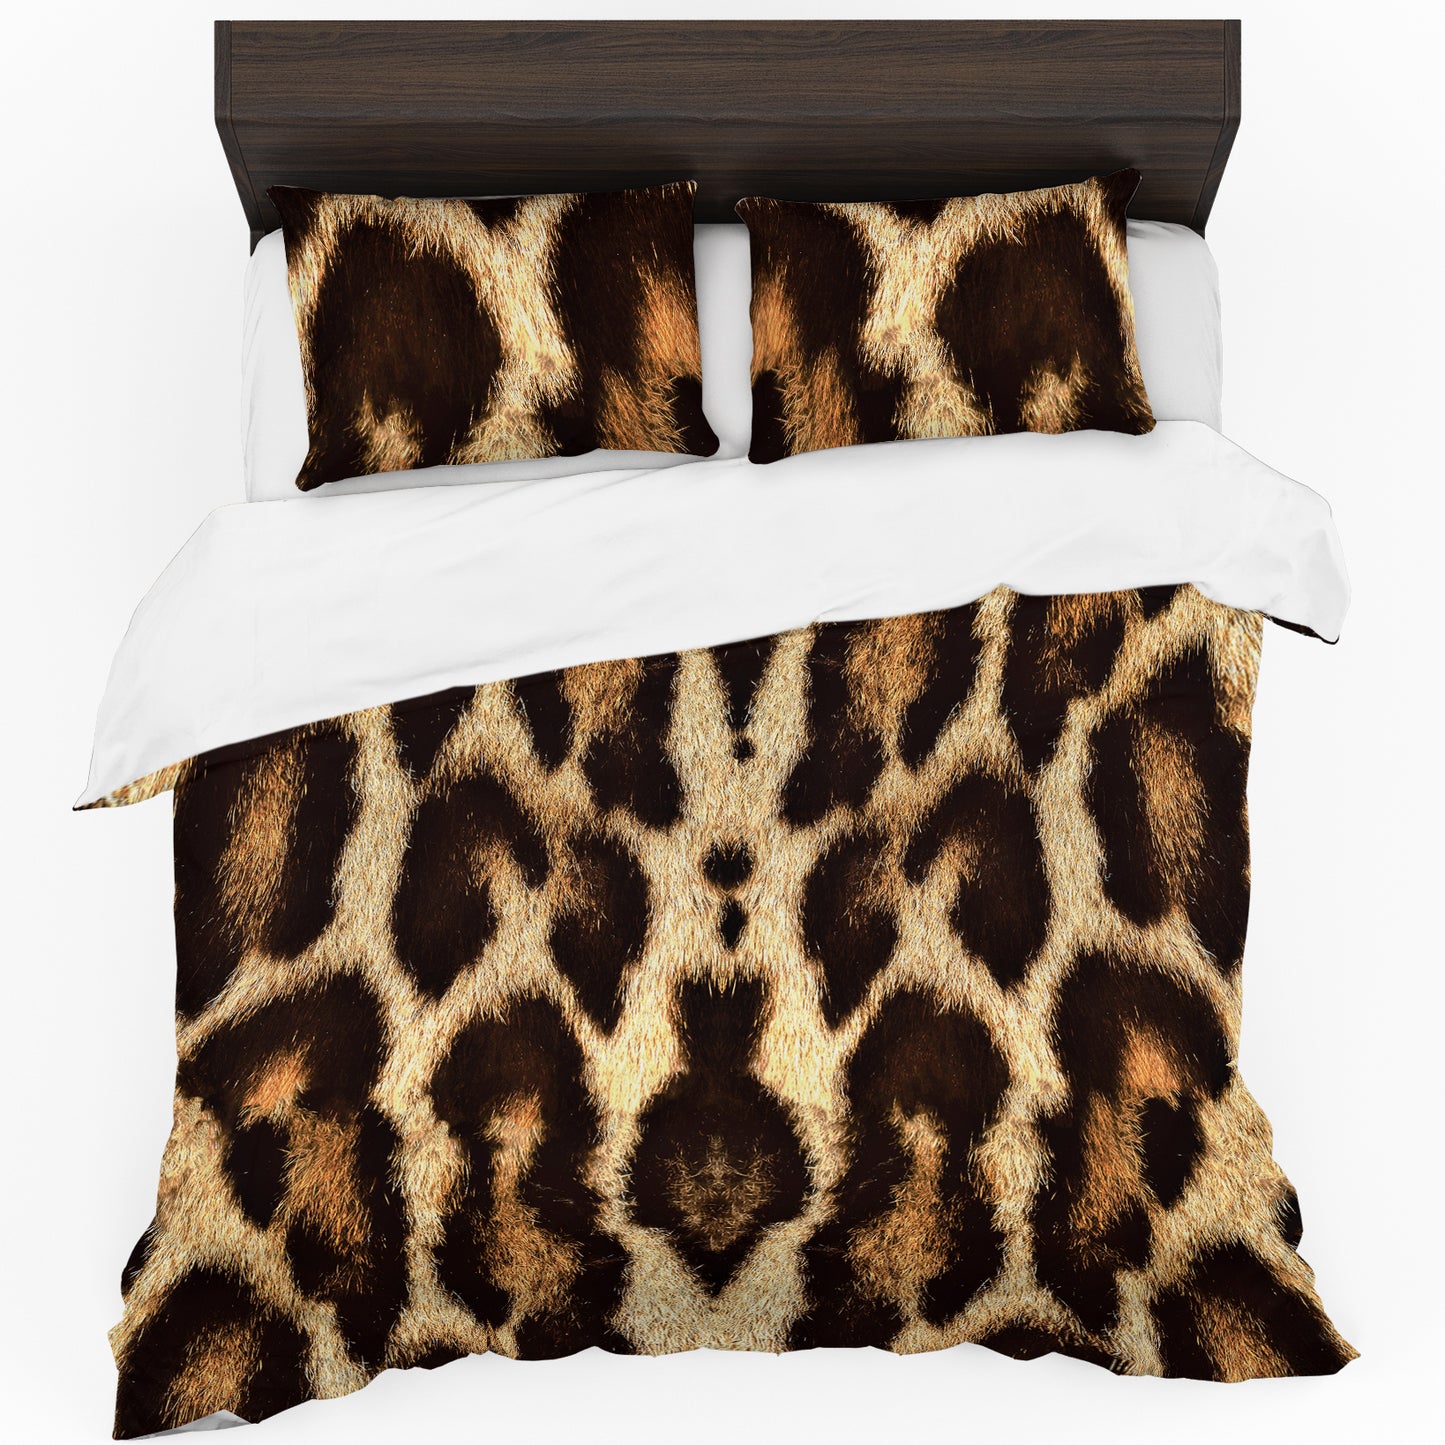 Leopard Skin Duvet Cover Set